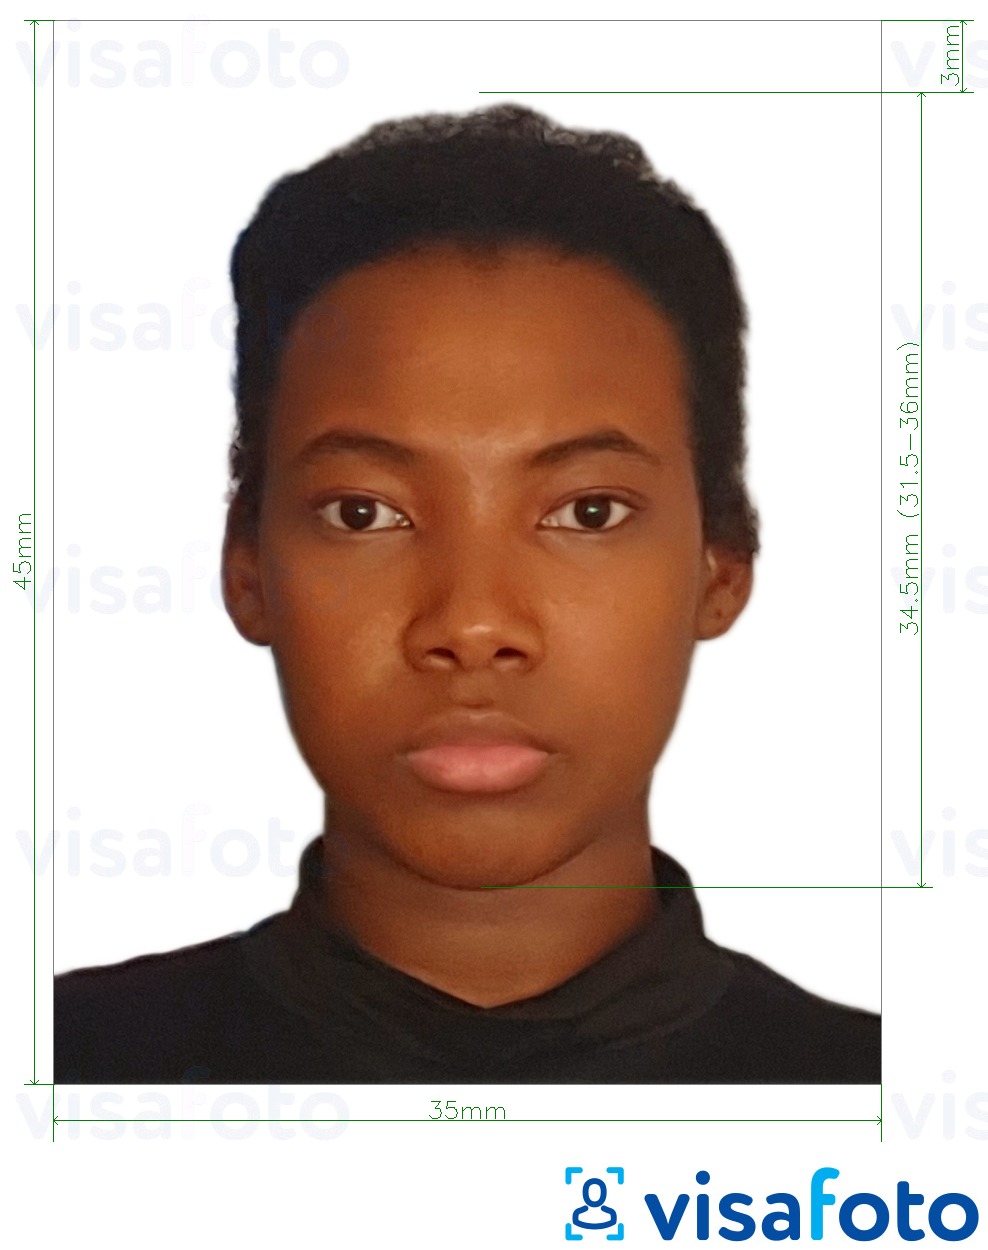 Exemples sur des photos pour Visa de la Namibie de l'Europe 35x45mm (3.5x4.5 cm) avec les spécifications de taille exactes